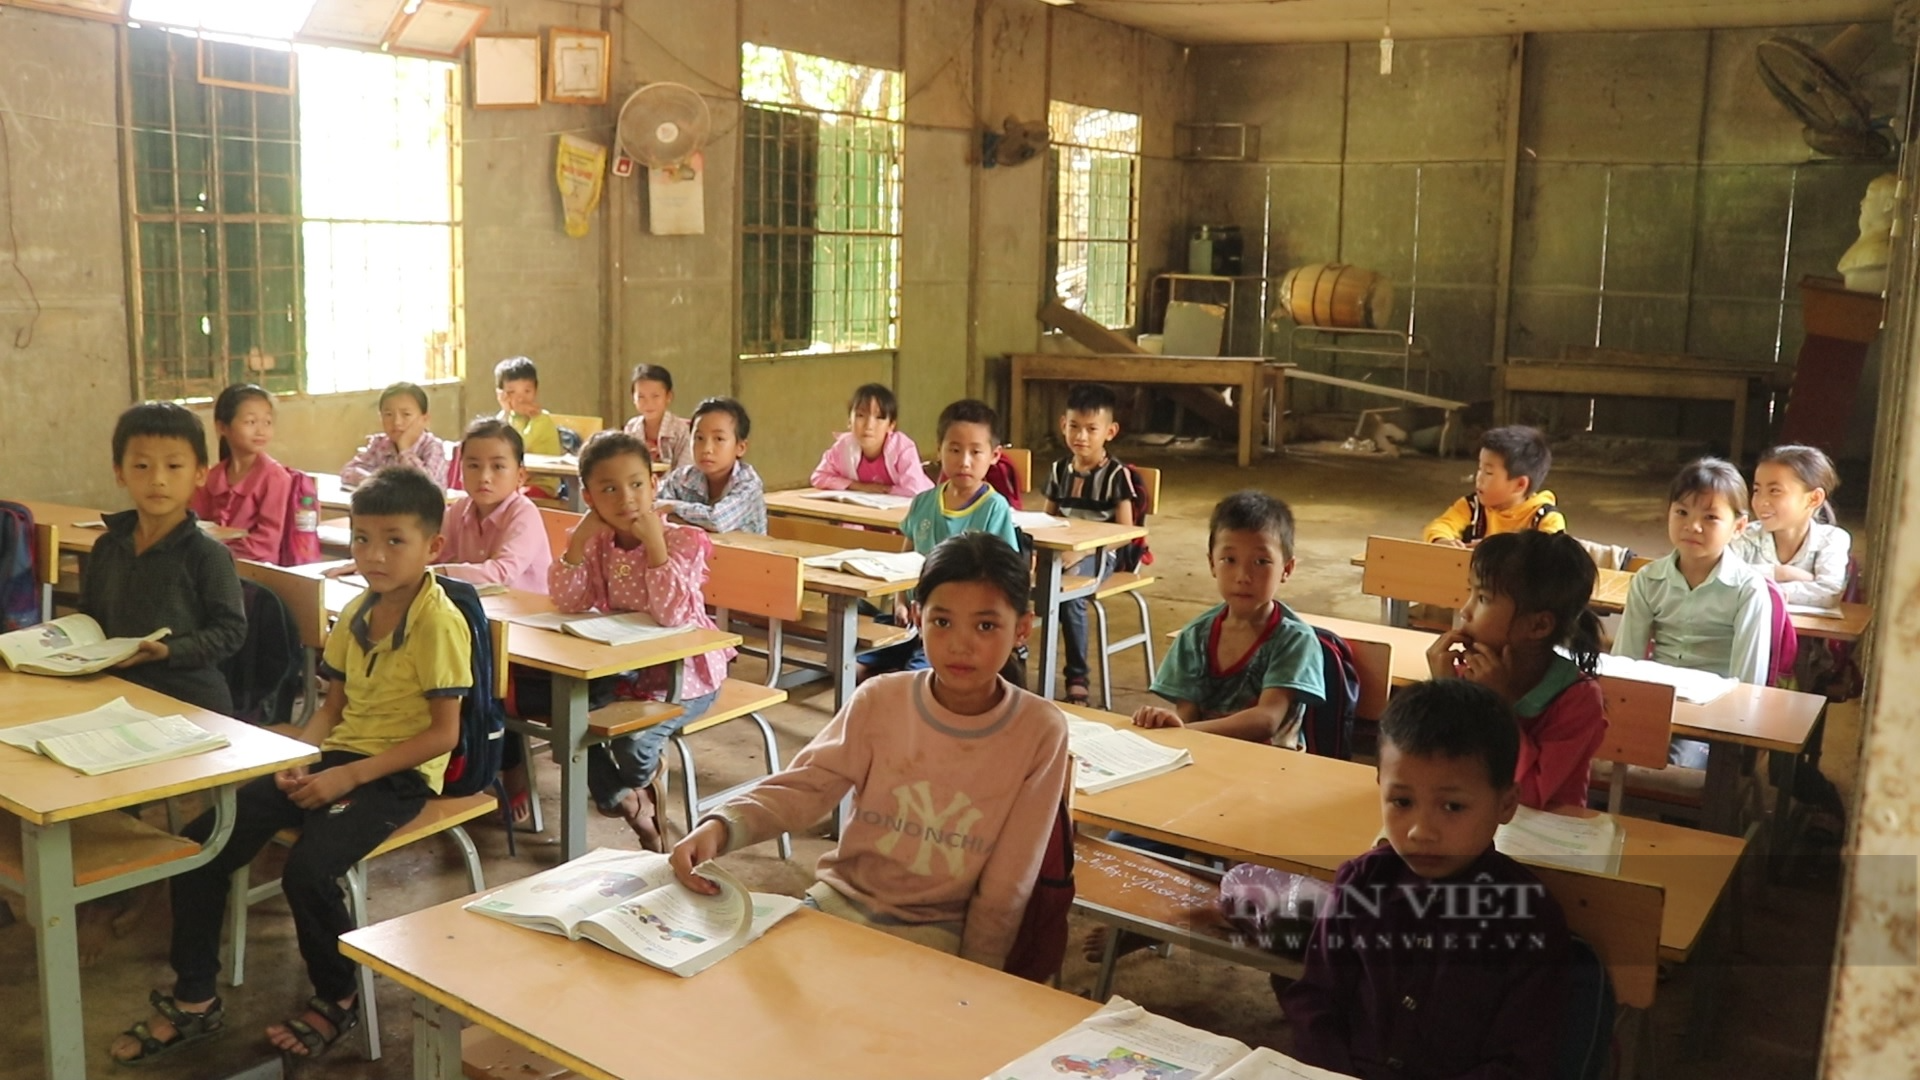 Báo NTNN/Dân Việt khởi công điểm trường mơ ước ở vùng quê nghèo Sơn La - Ảnh 1.